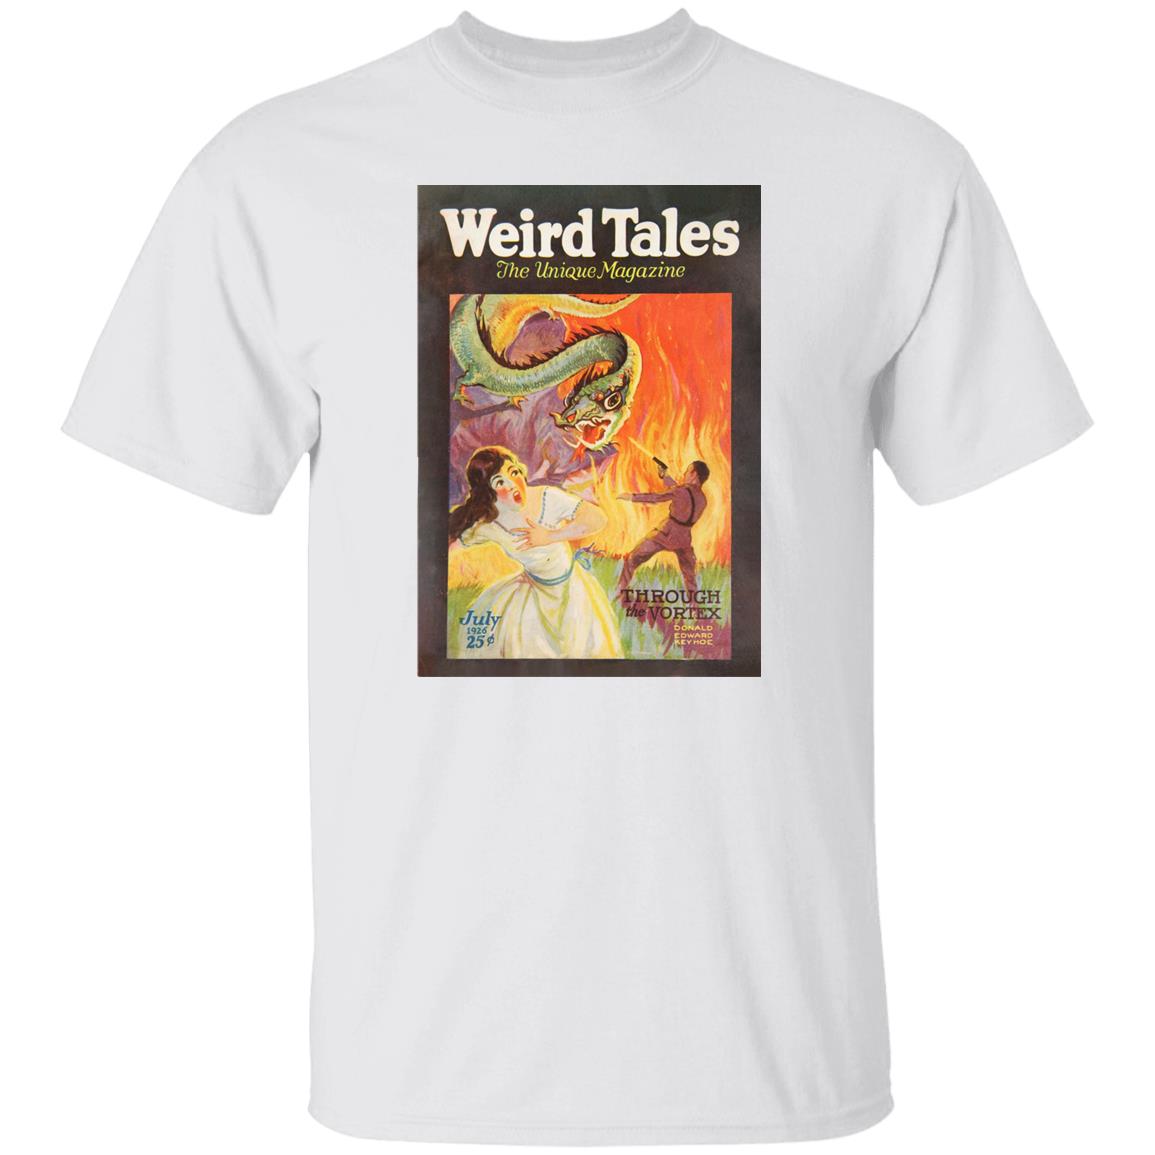 Weird Tales Cover Art July 1926 "Through the Vortex" T-Shirt